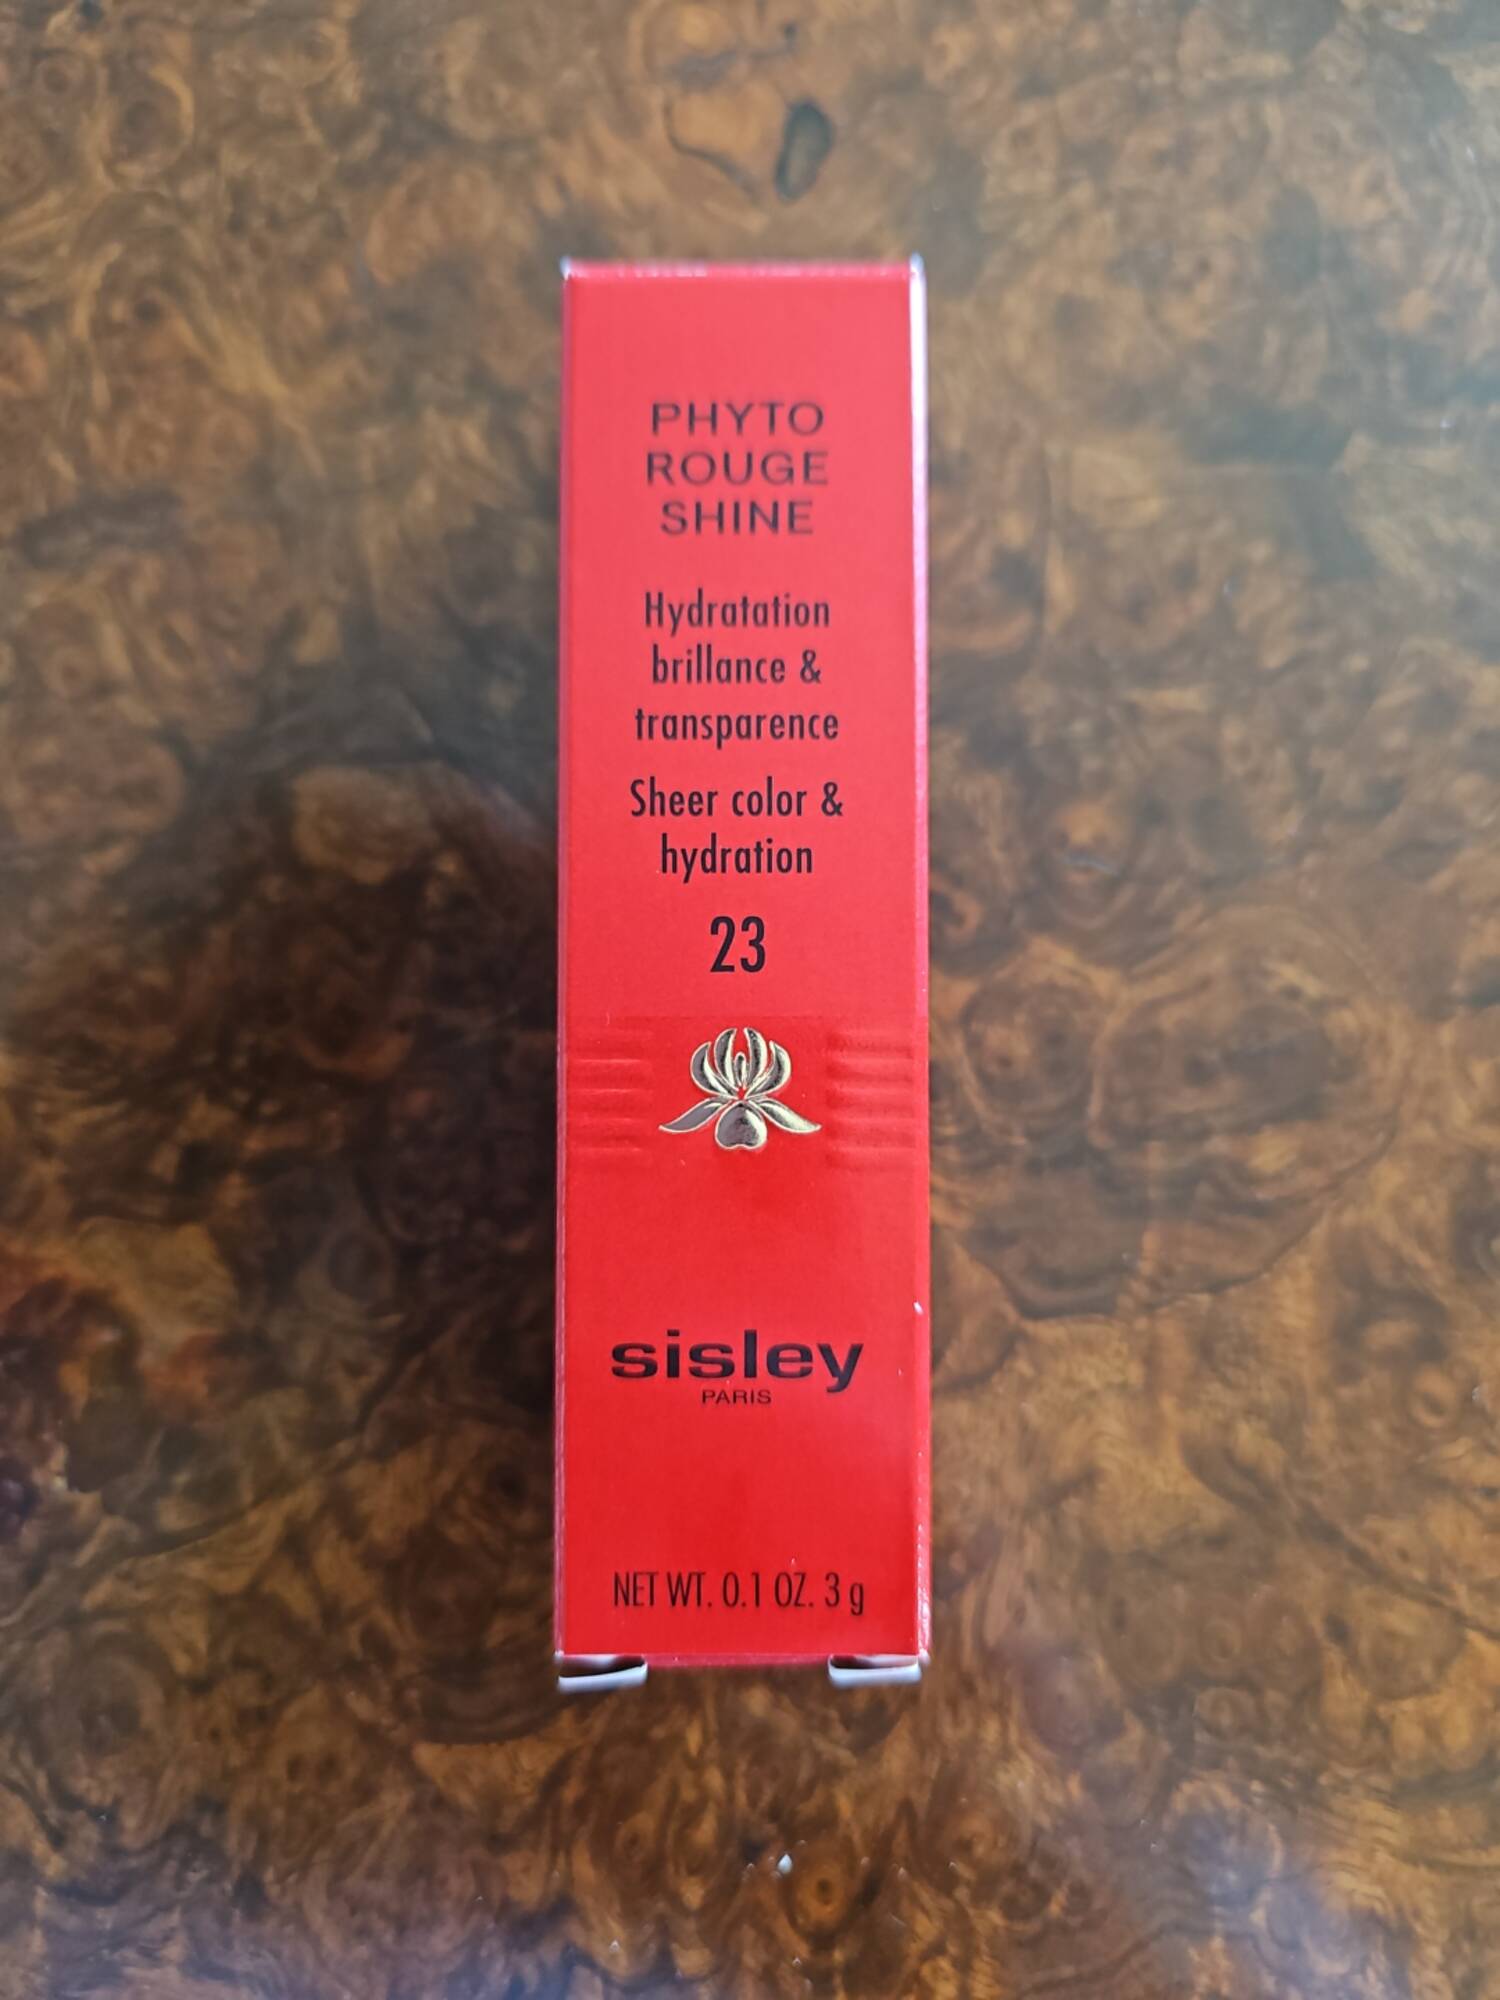 SISLEY - Phyto rouge shine 23